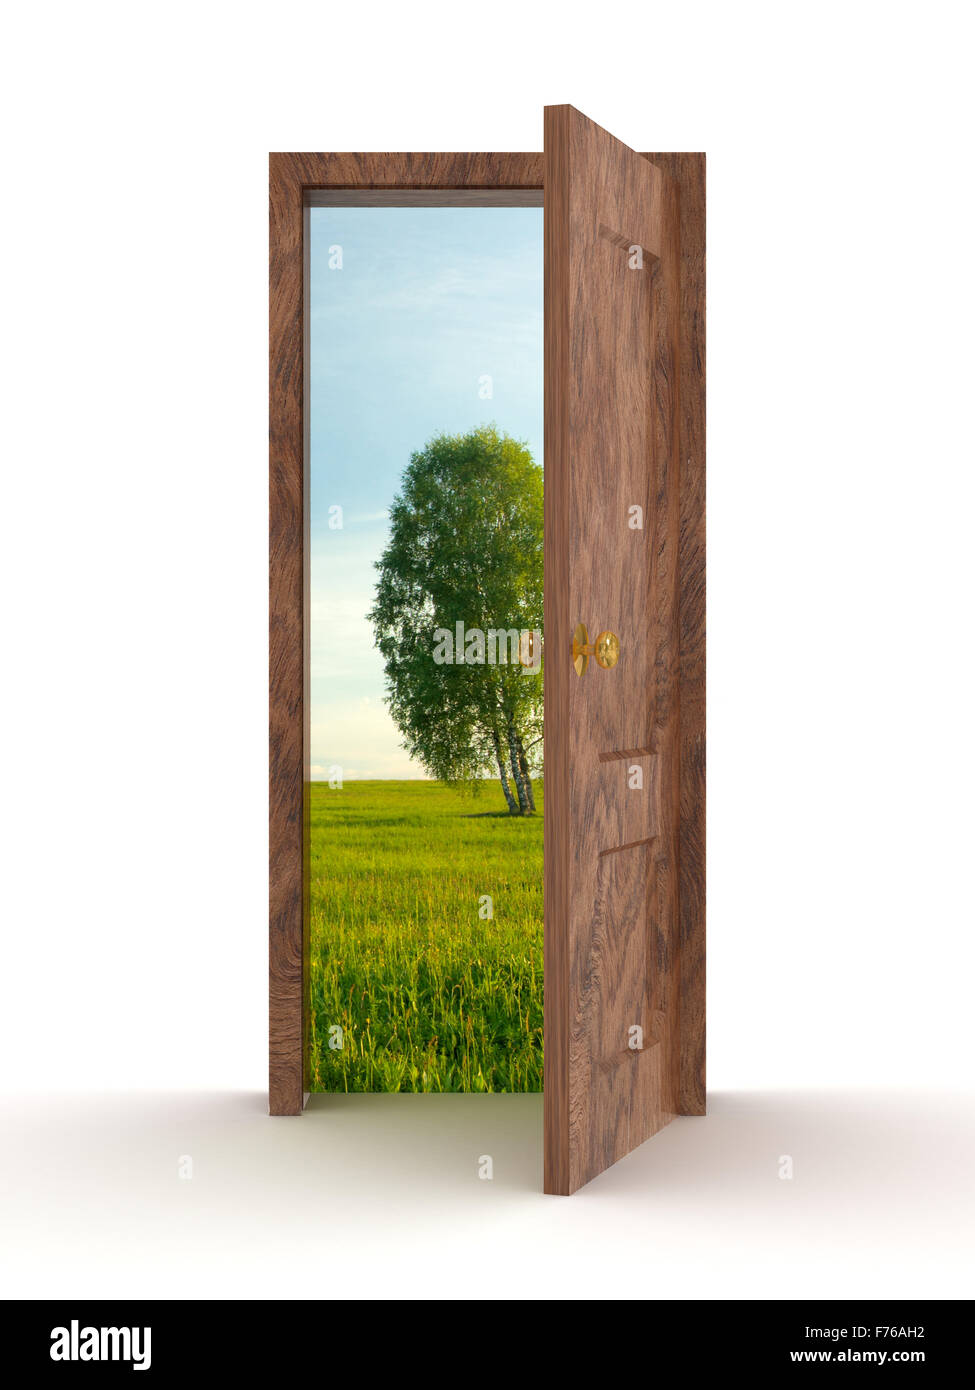 Landscape behind the open door. 3D image Stock Photo